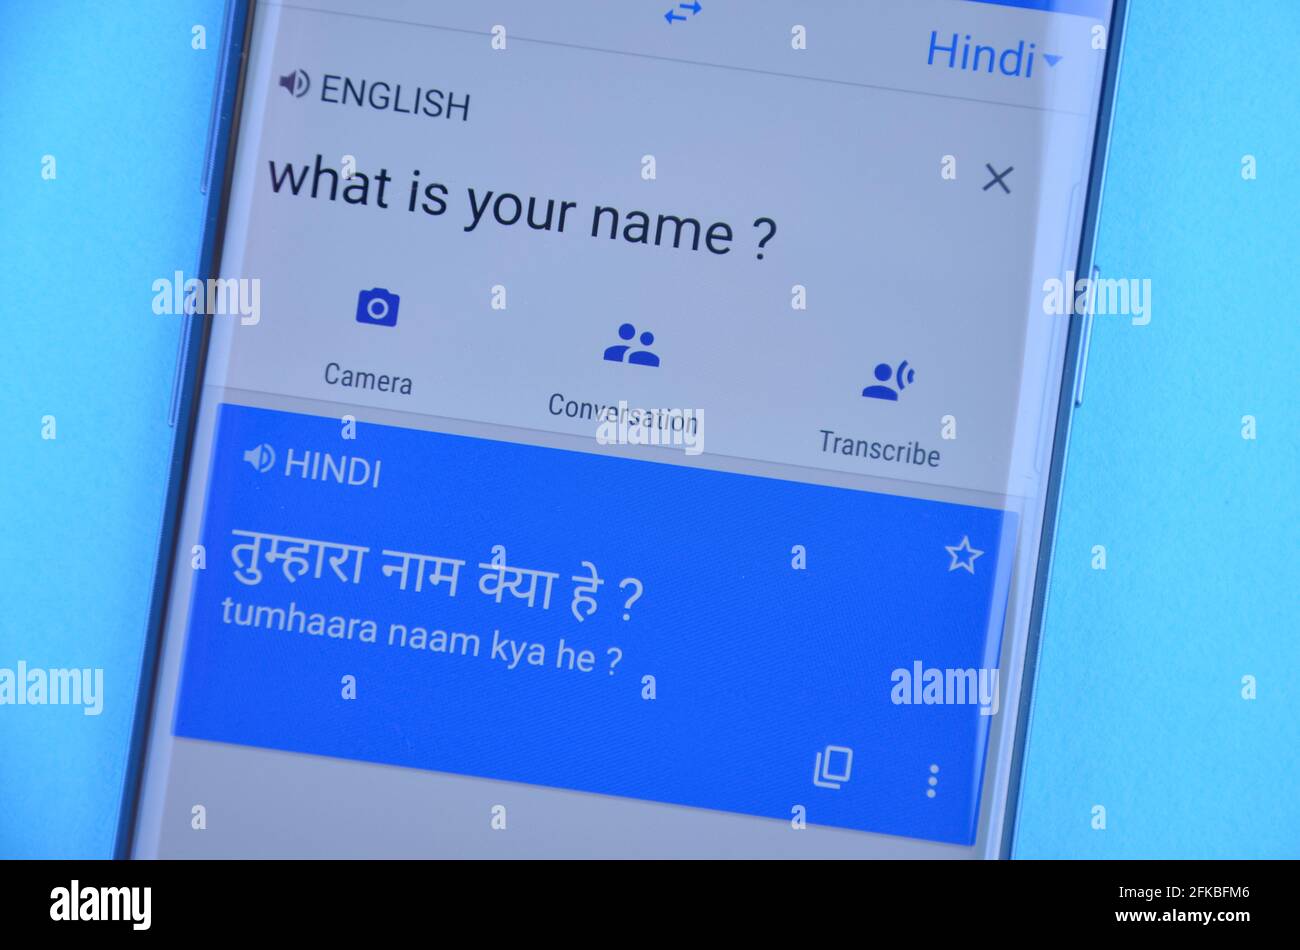 Mandi, Himachal Pradesh, Inde - 03 05 2021: Traduire 'quel est votre nom' anglais en langue hindi sur Google traduire affichage sur téléphone mobile isolé sur fond bleu. Banque D'Images